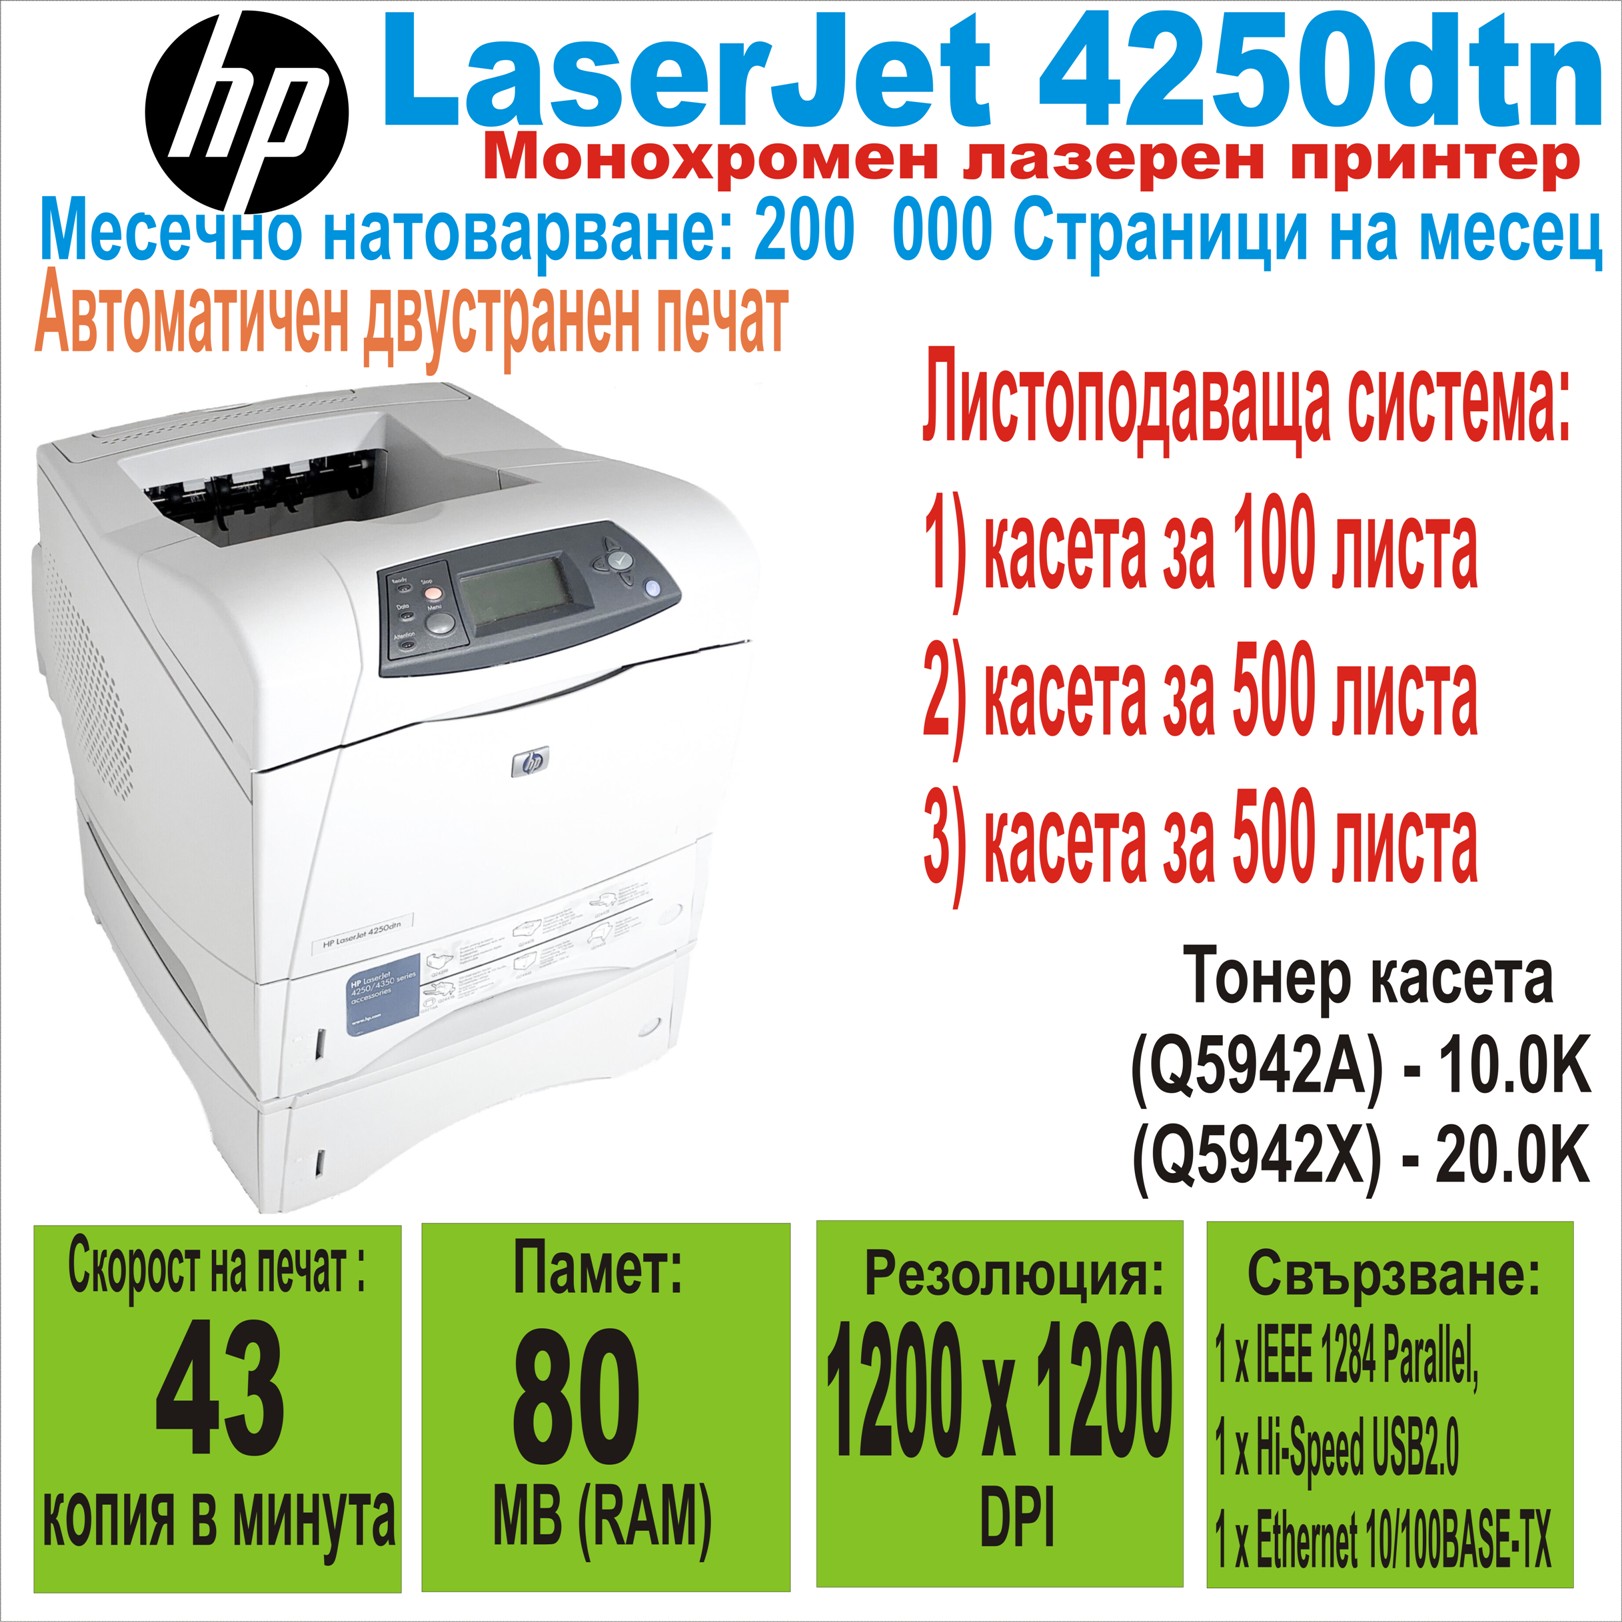 Лазерен принтер HP LaserJet 4250dtn